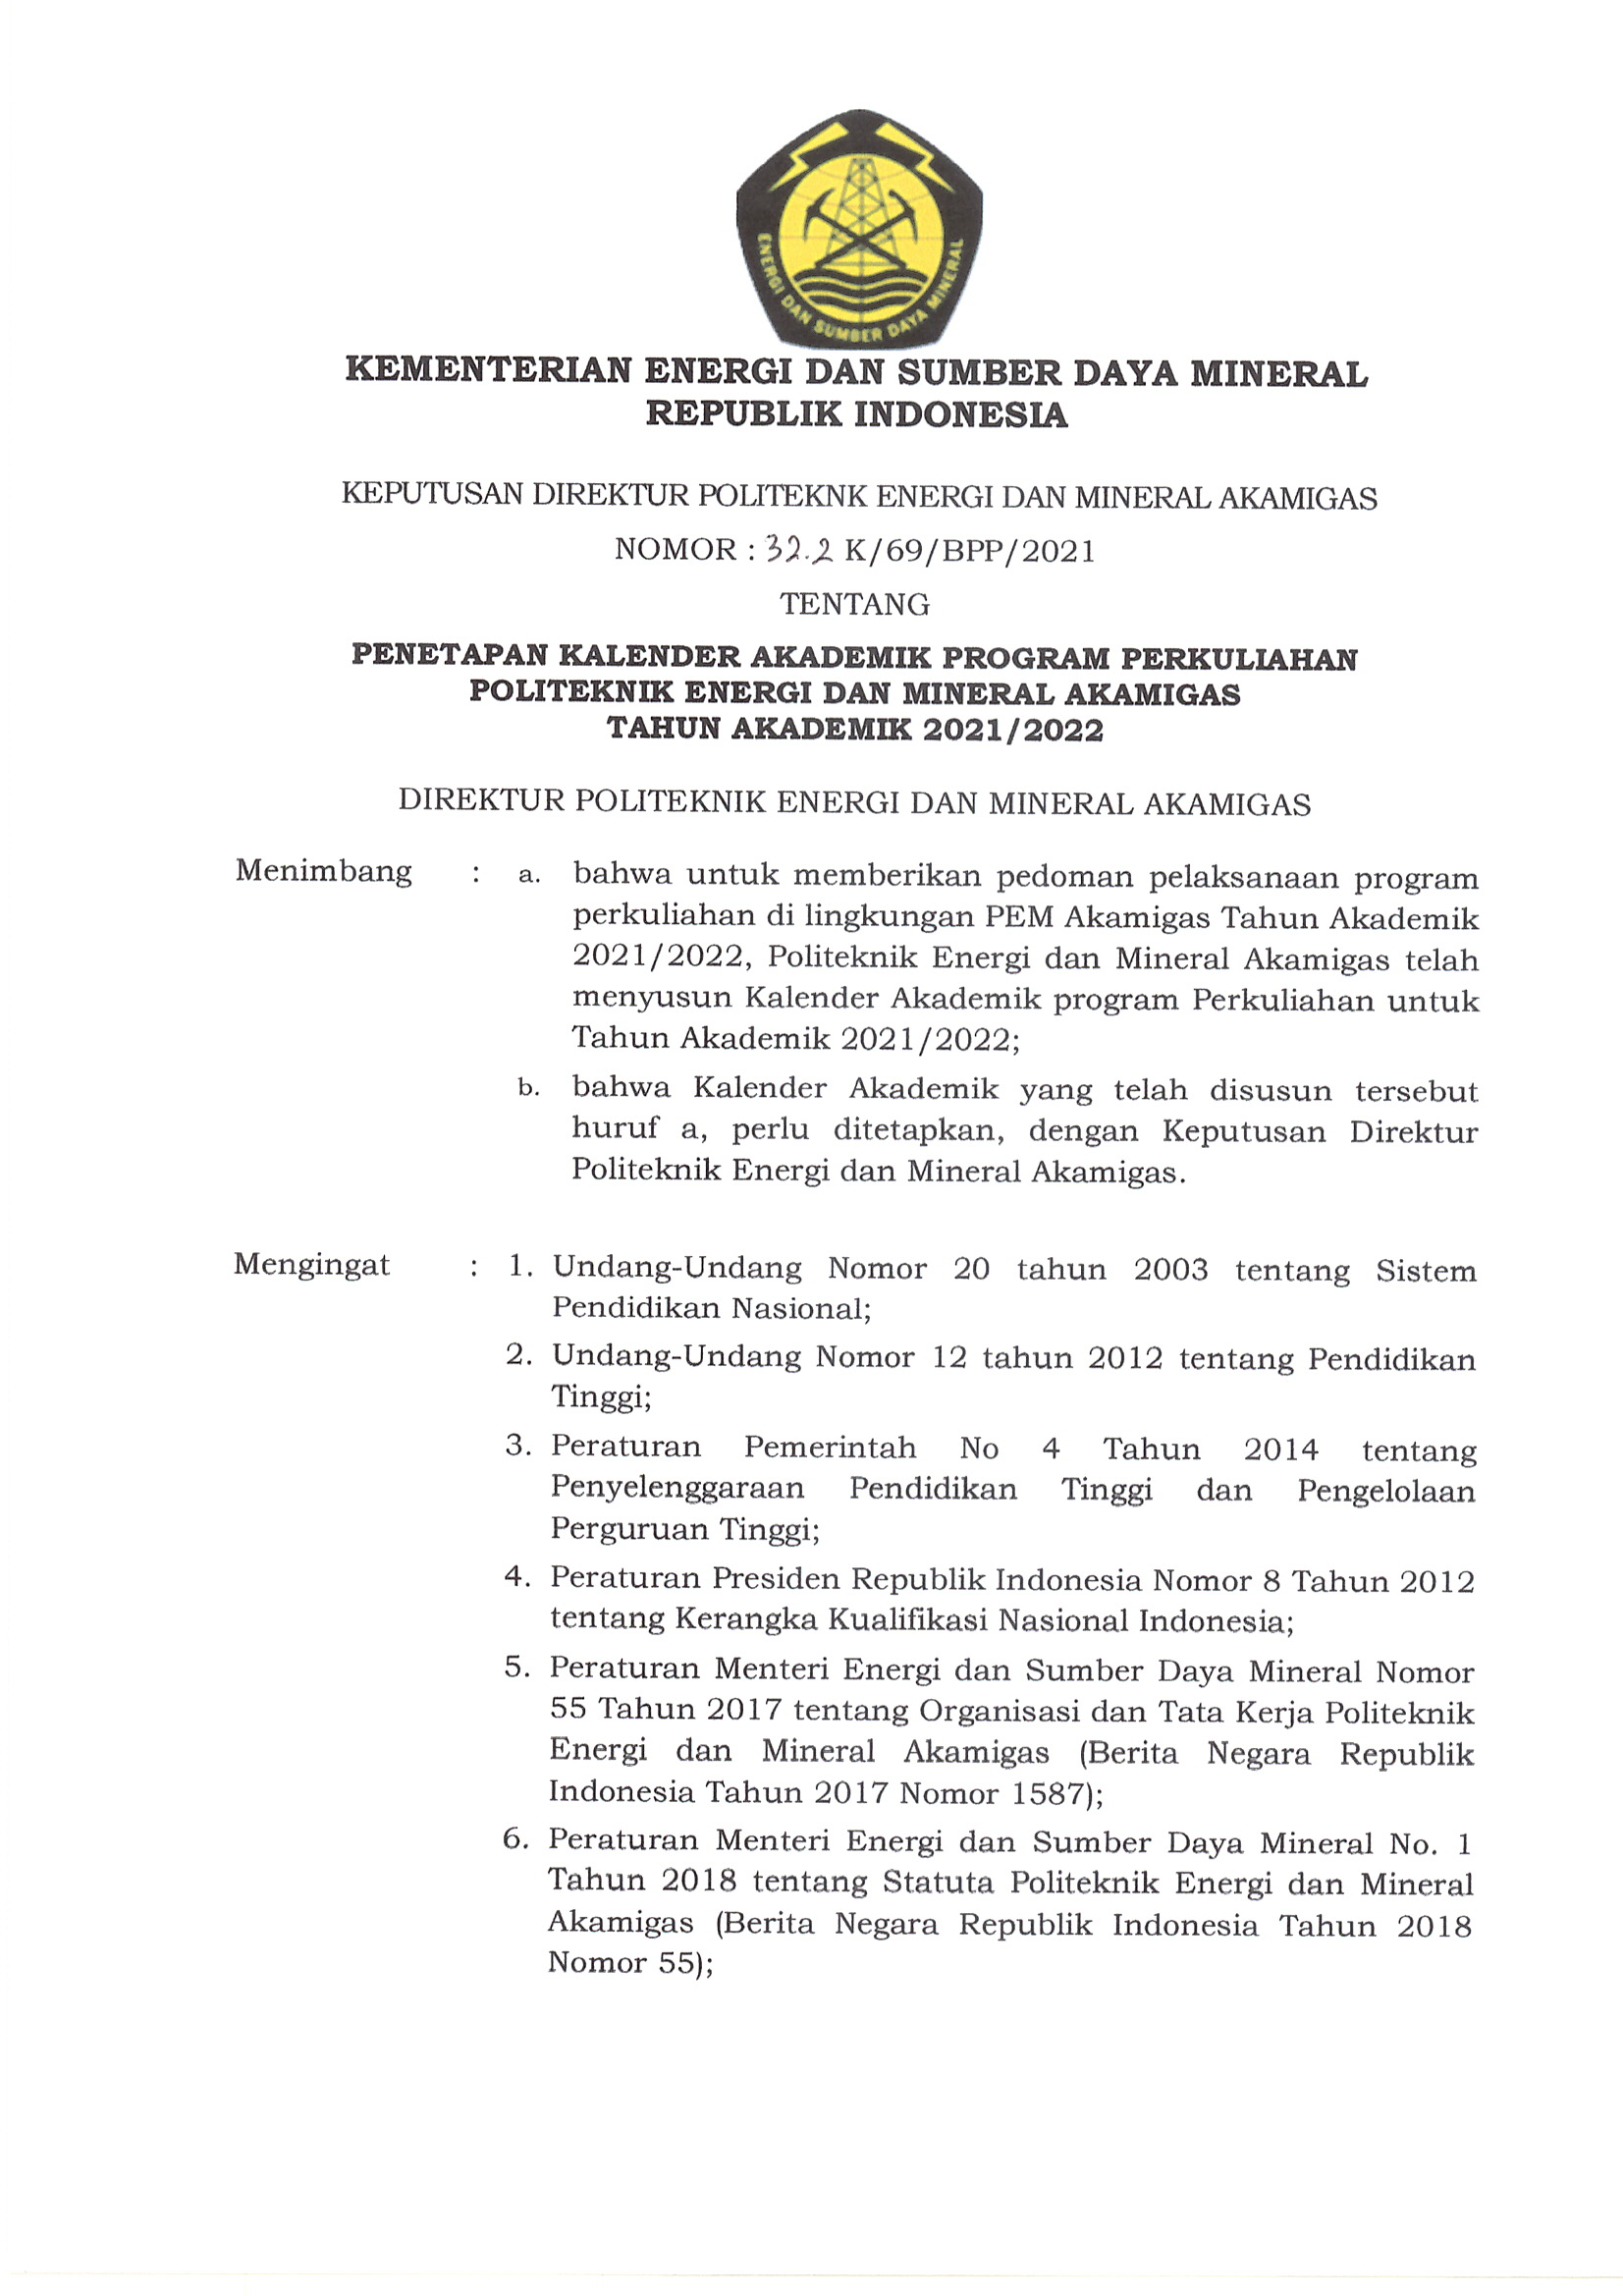 Penetapan Kalender Akademik Program Perkuliahan PEM Akamigas TA 2021/2022